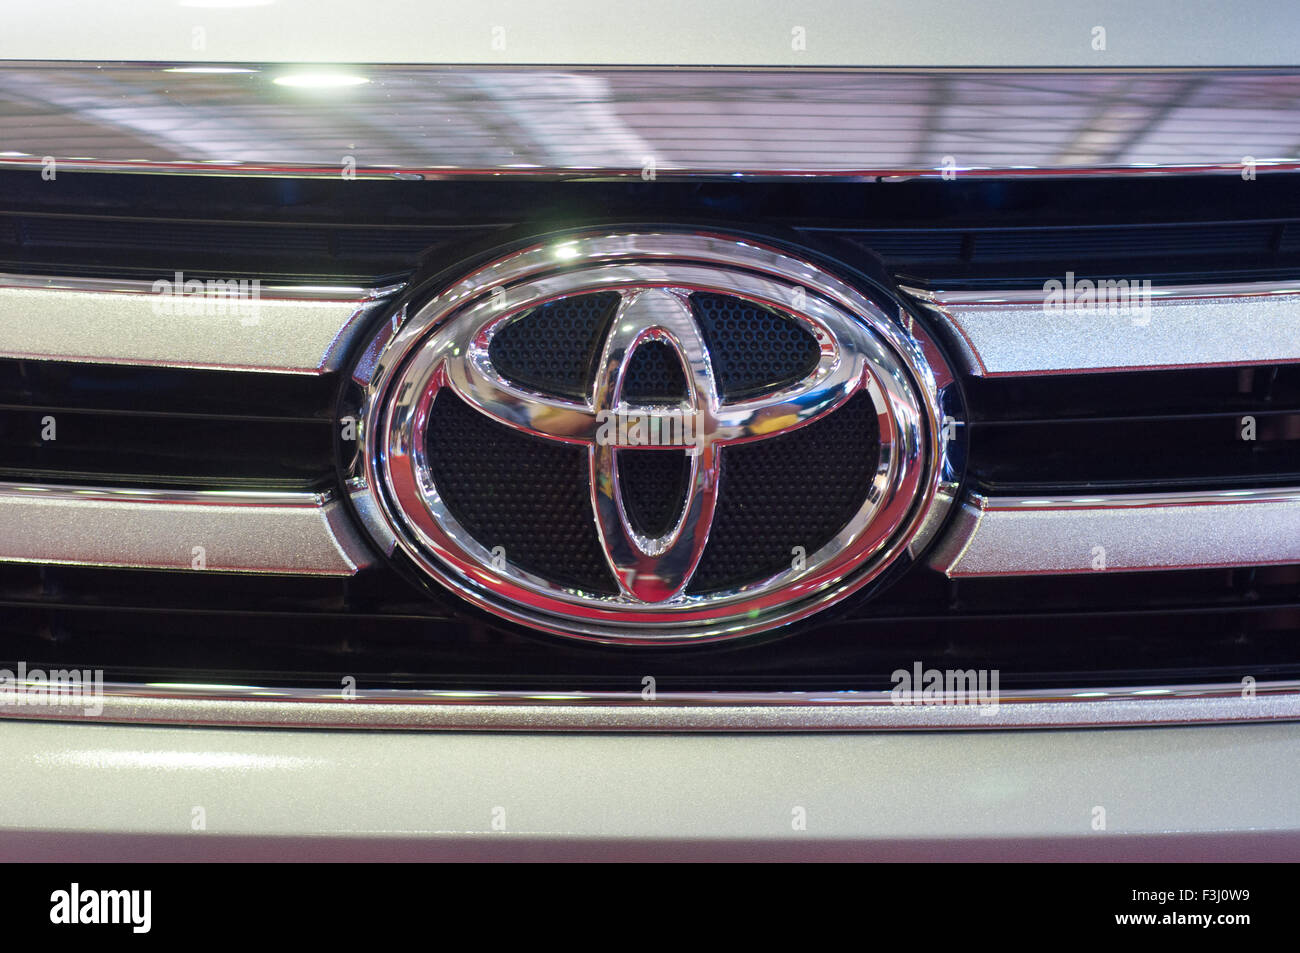 Toyota emblem on a car Stock Photo